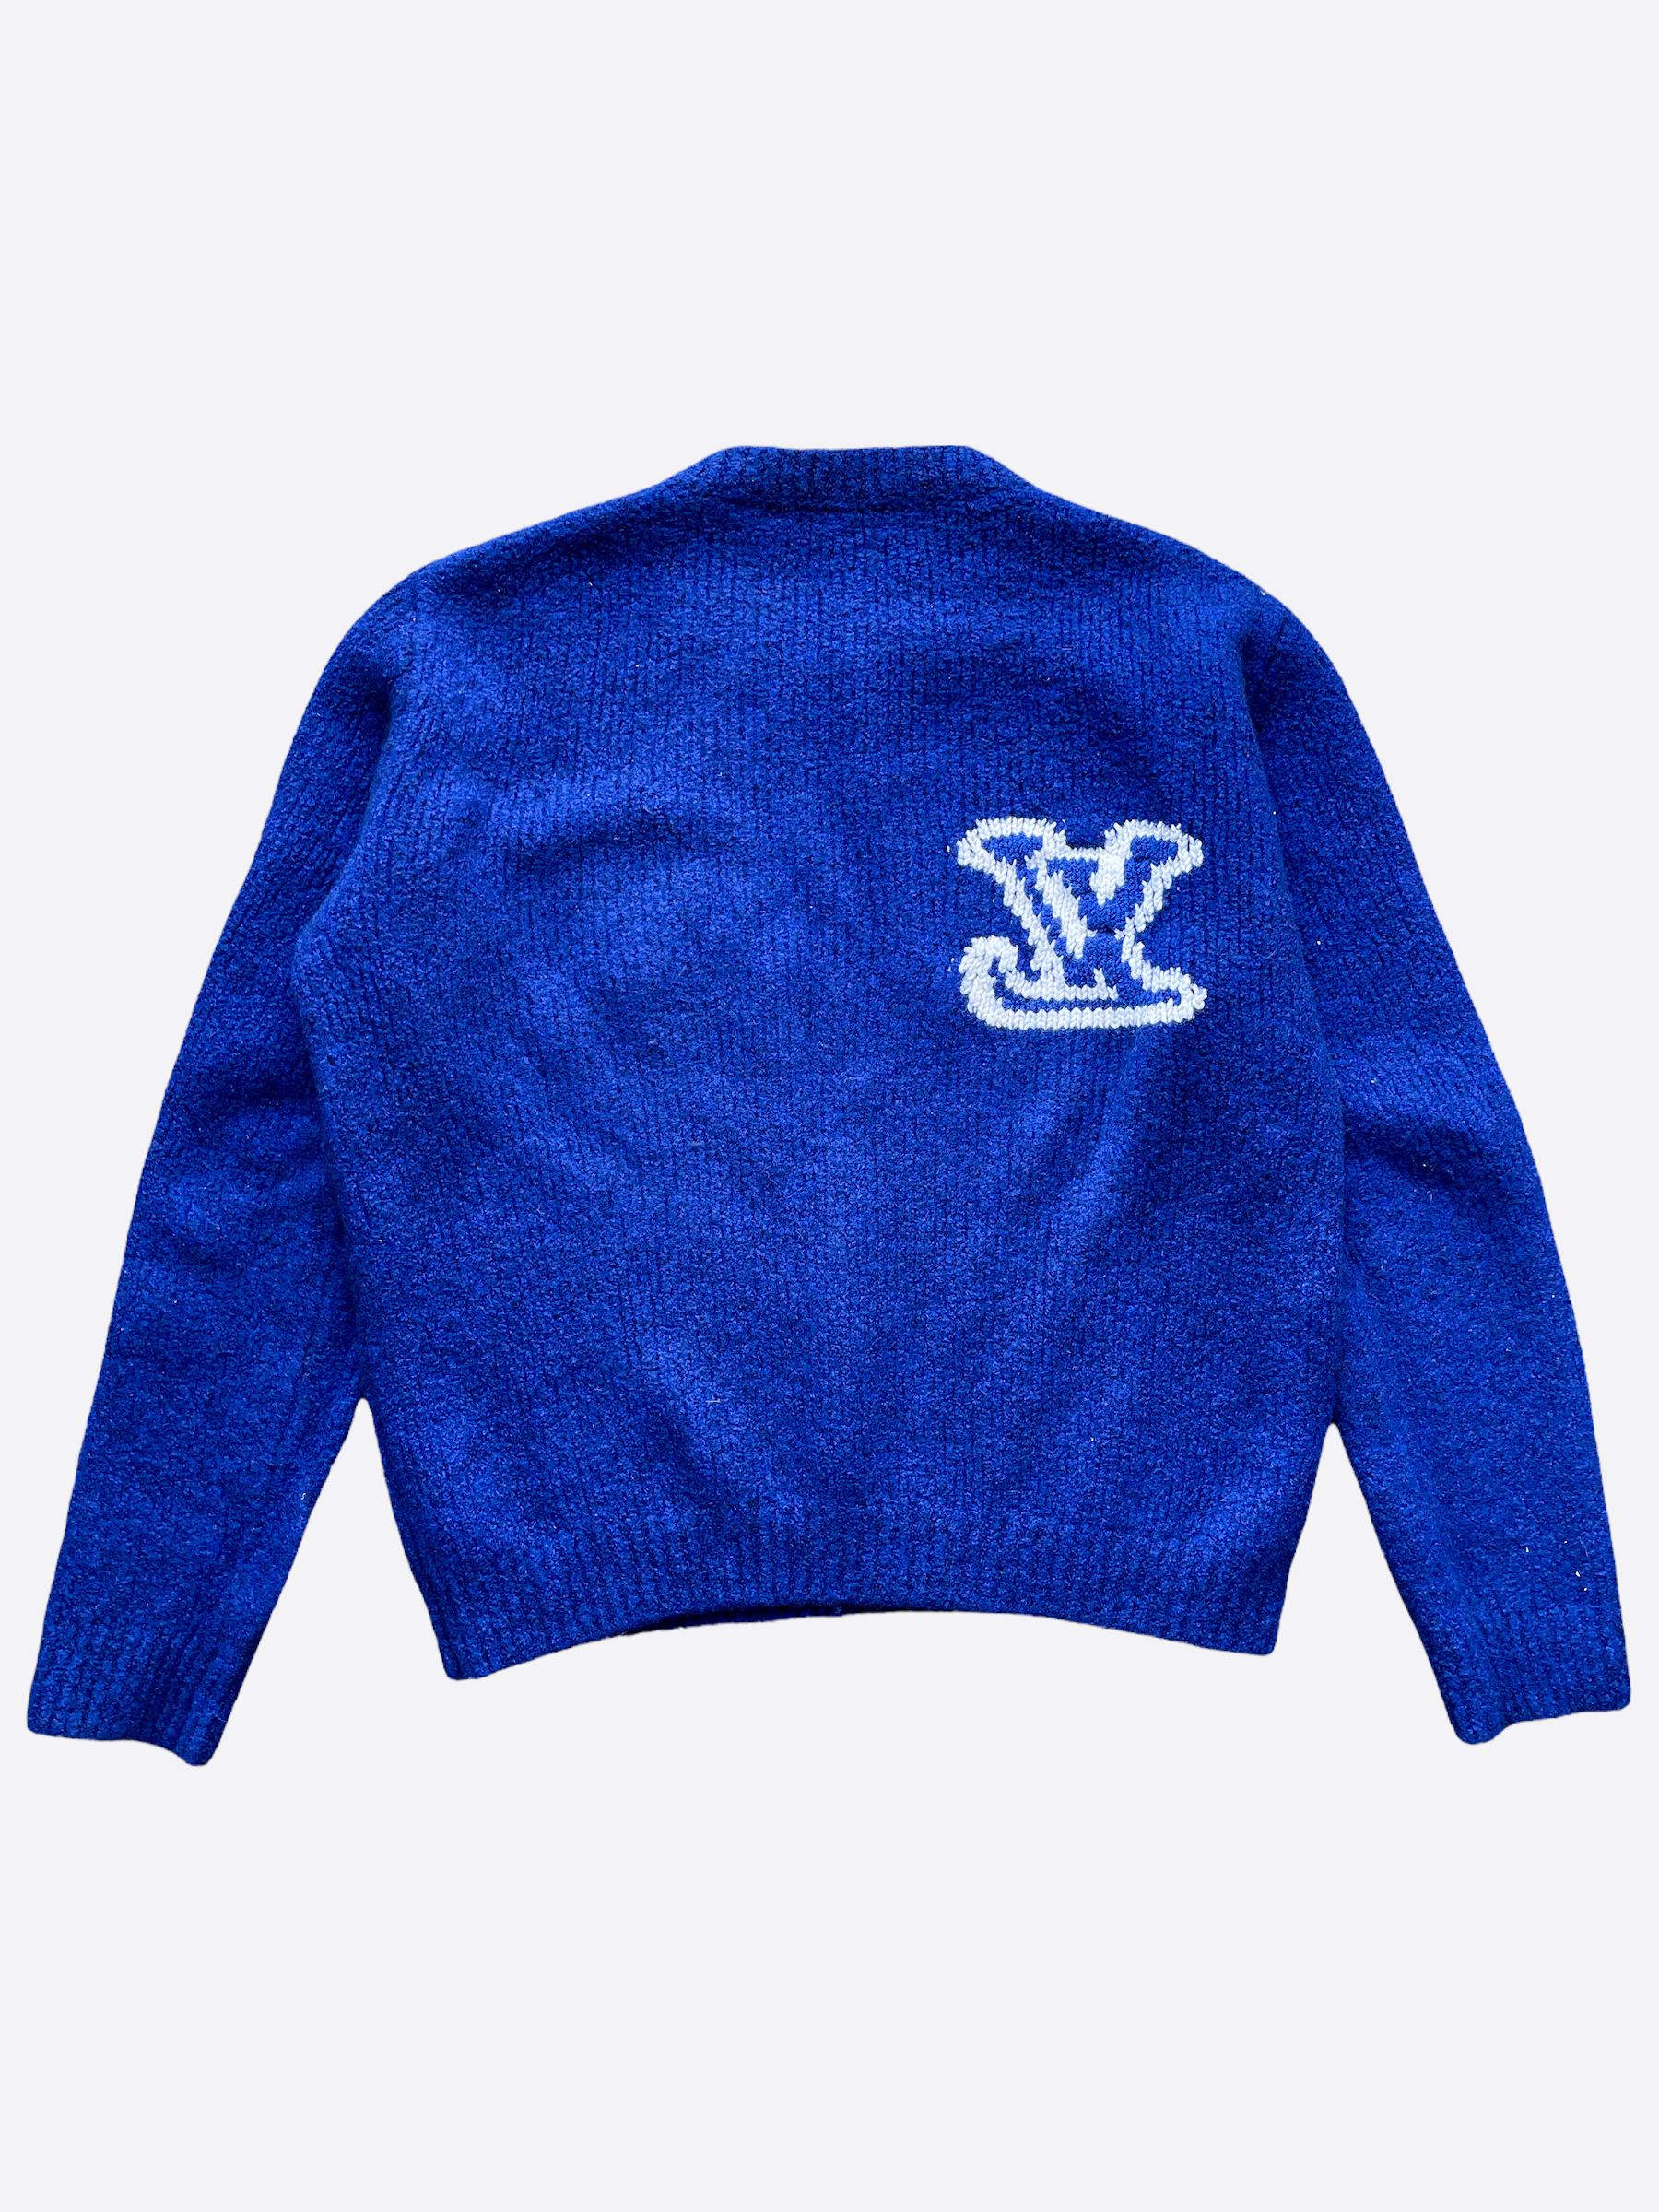 Louis Vuitton, Sweaters, Authentic Louis Vuitton Cardigan